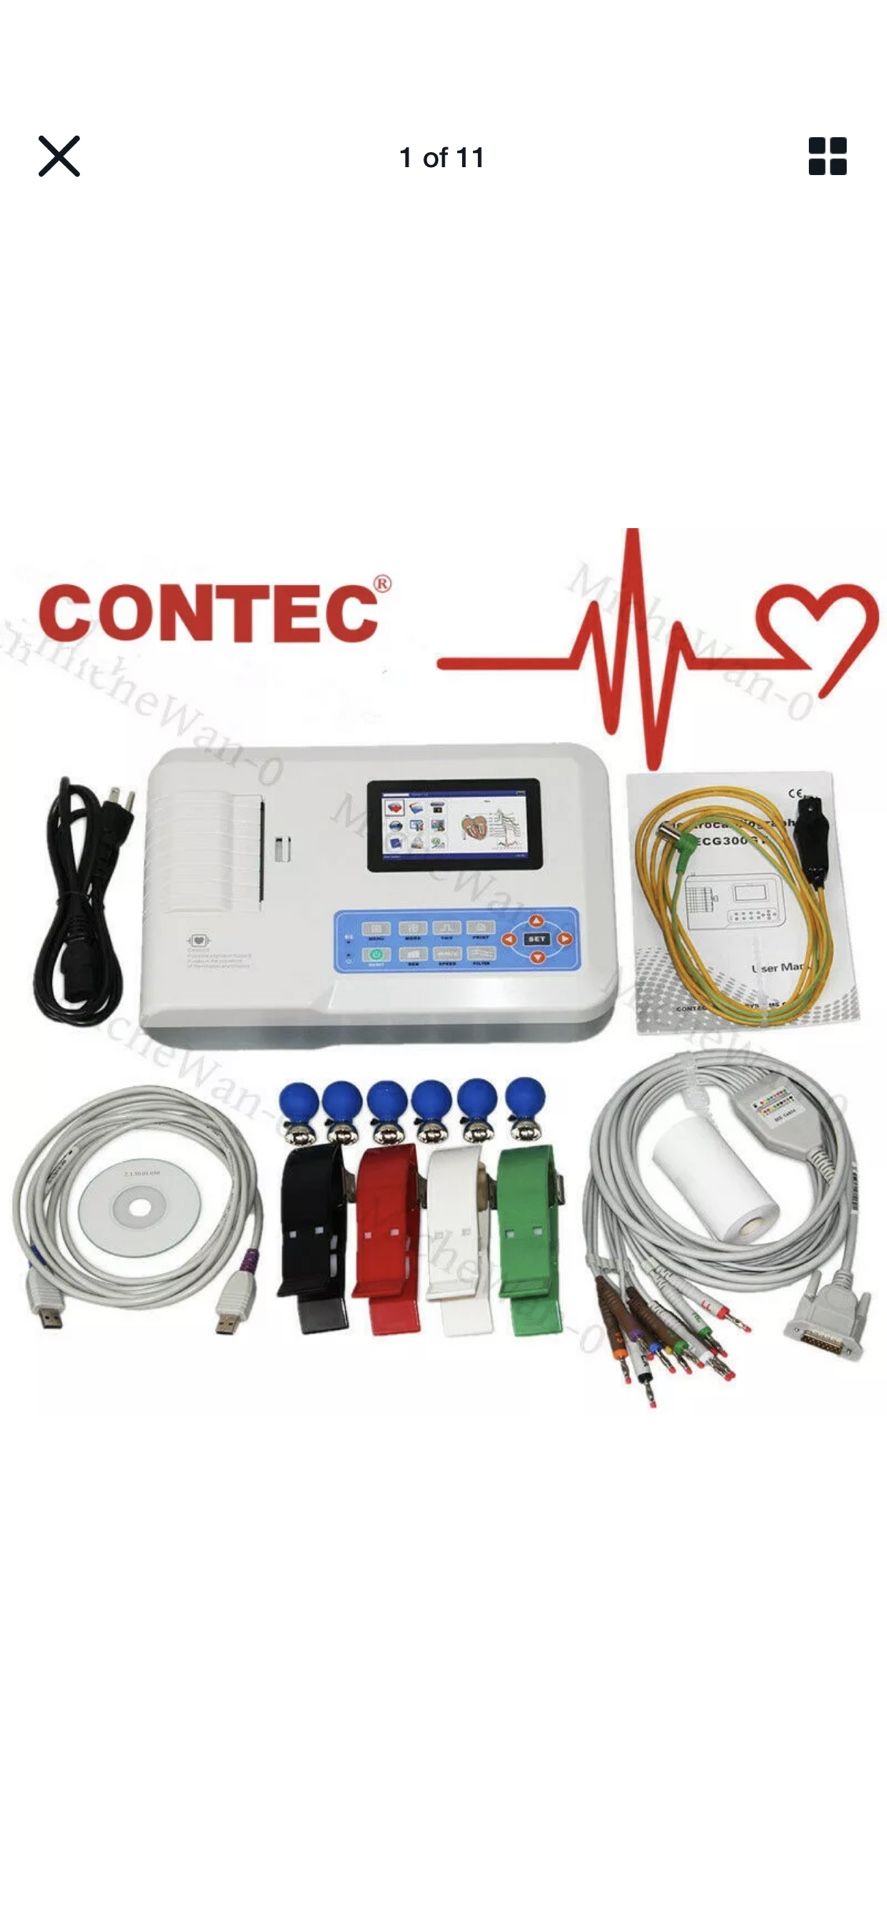 EKG CONTEC ELECTROCARDIOGRAPH ECG 300G